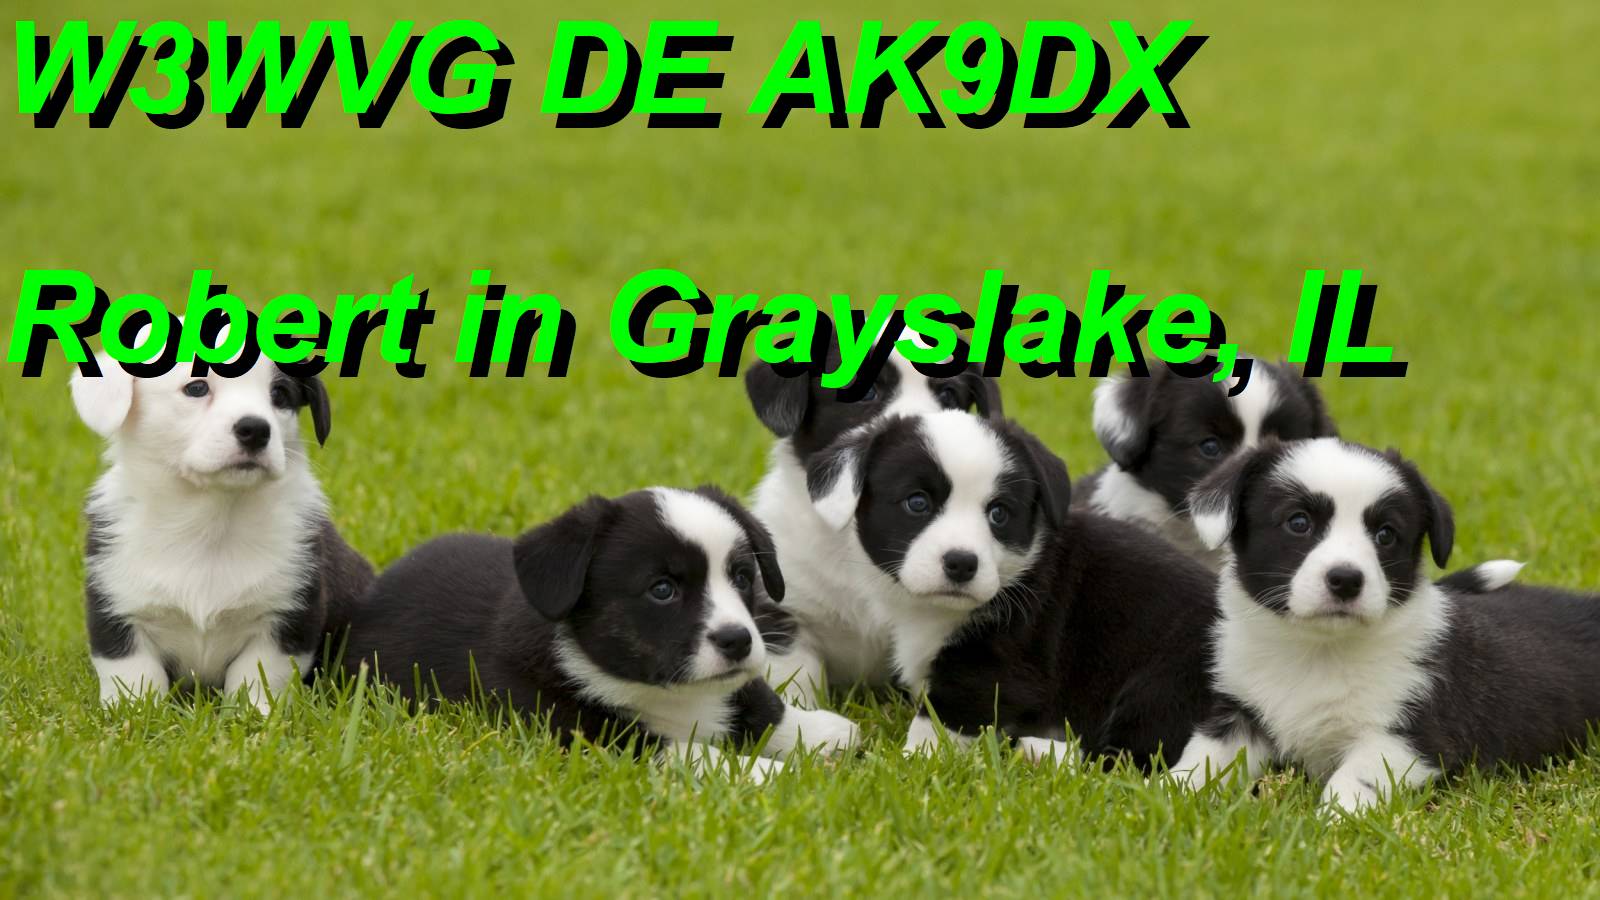 AK9DX image#3